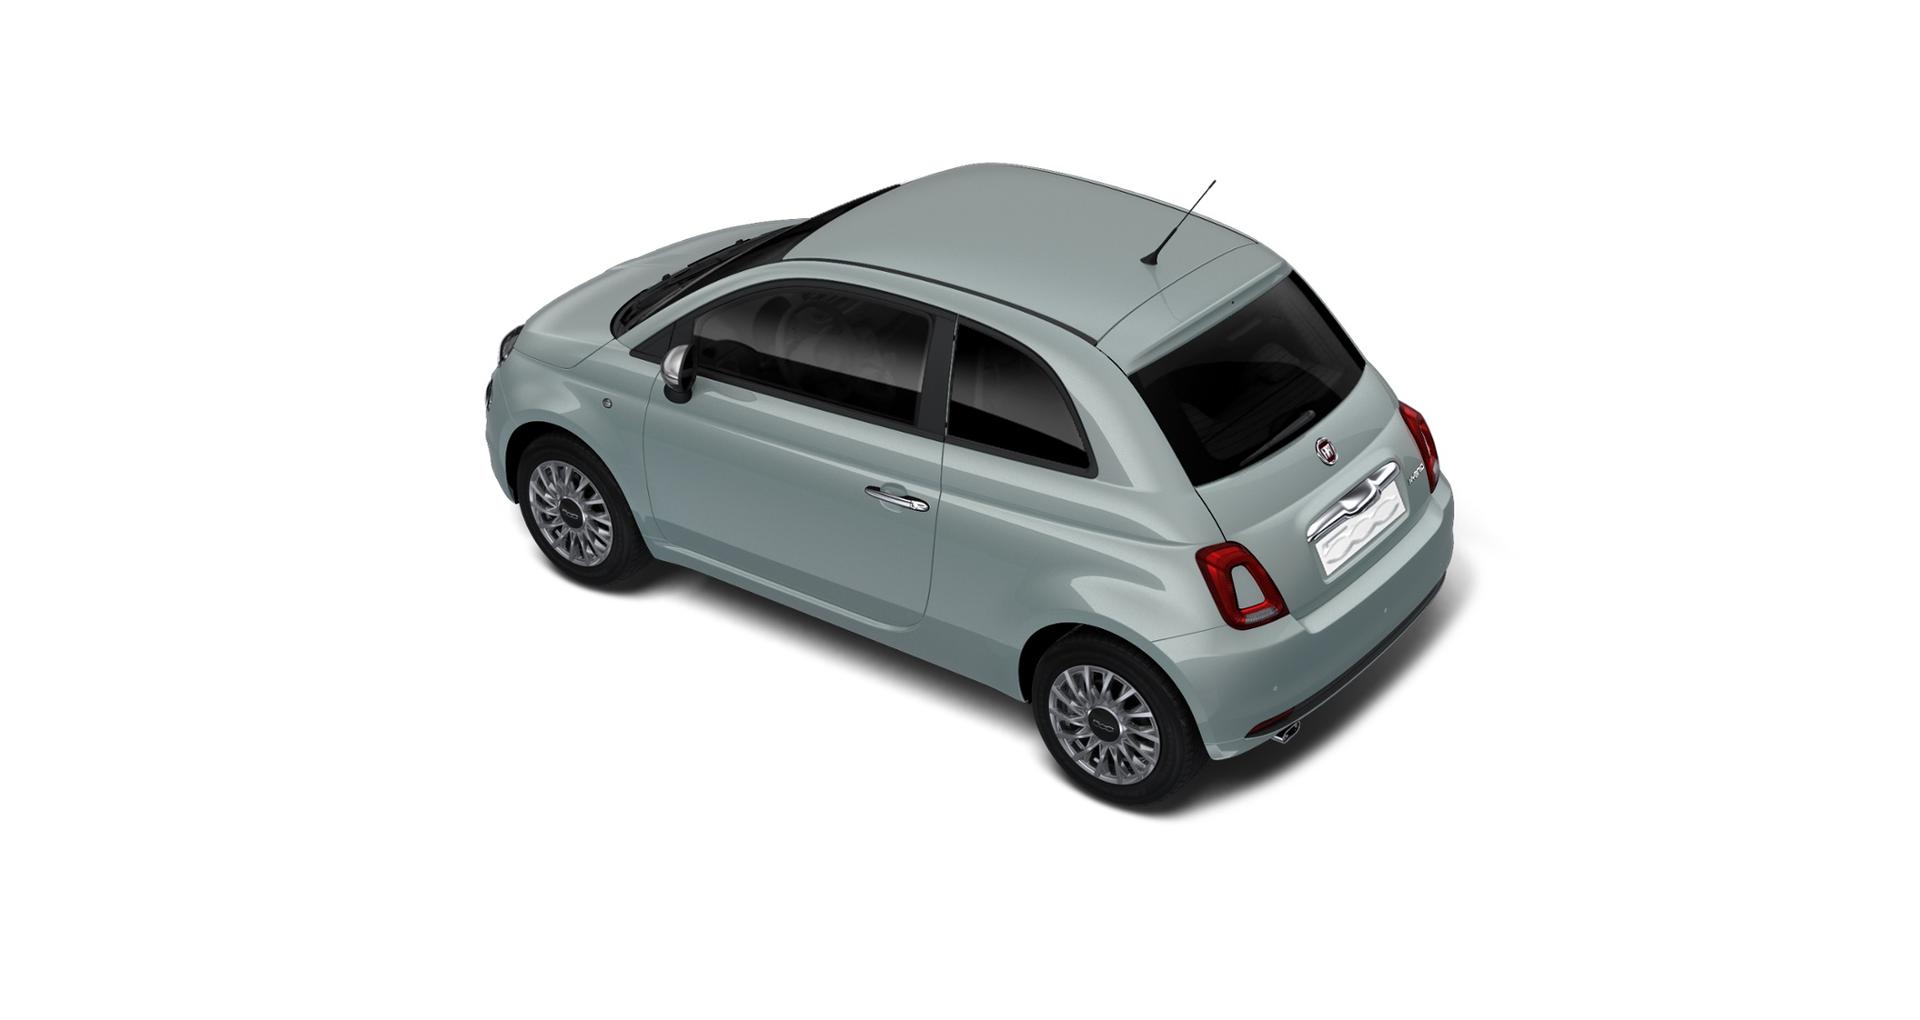 Fiat 500 Hatchback Hybrid 1.0 GSE 51 kW (70 PS) MJ 23, Style Paket:  15-Leichtmetallfelgen, Außenspiegelkappen in Chrom, Auspuffendrohr  Lackierte Seitenzierleisten, Getönte Seitenscheiben hinten uvm.  Vorlauffahrzeug Benzin Schalt. 6-Gang Frontantrieb 3